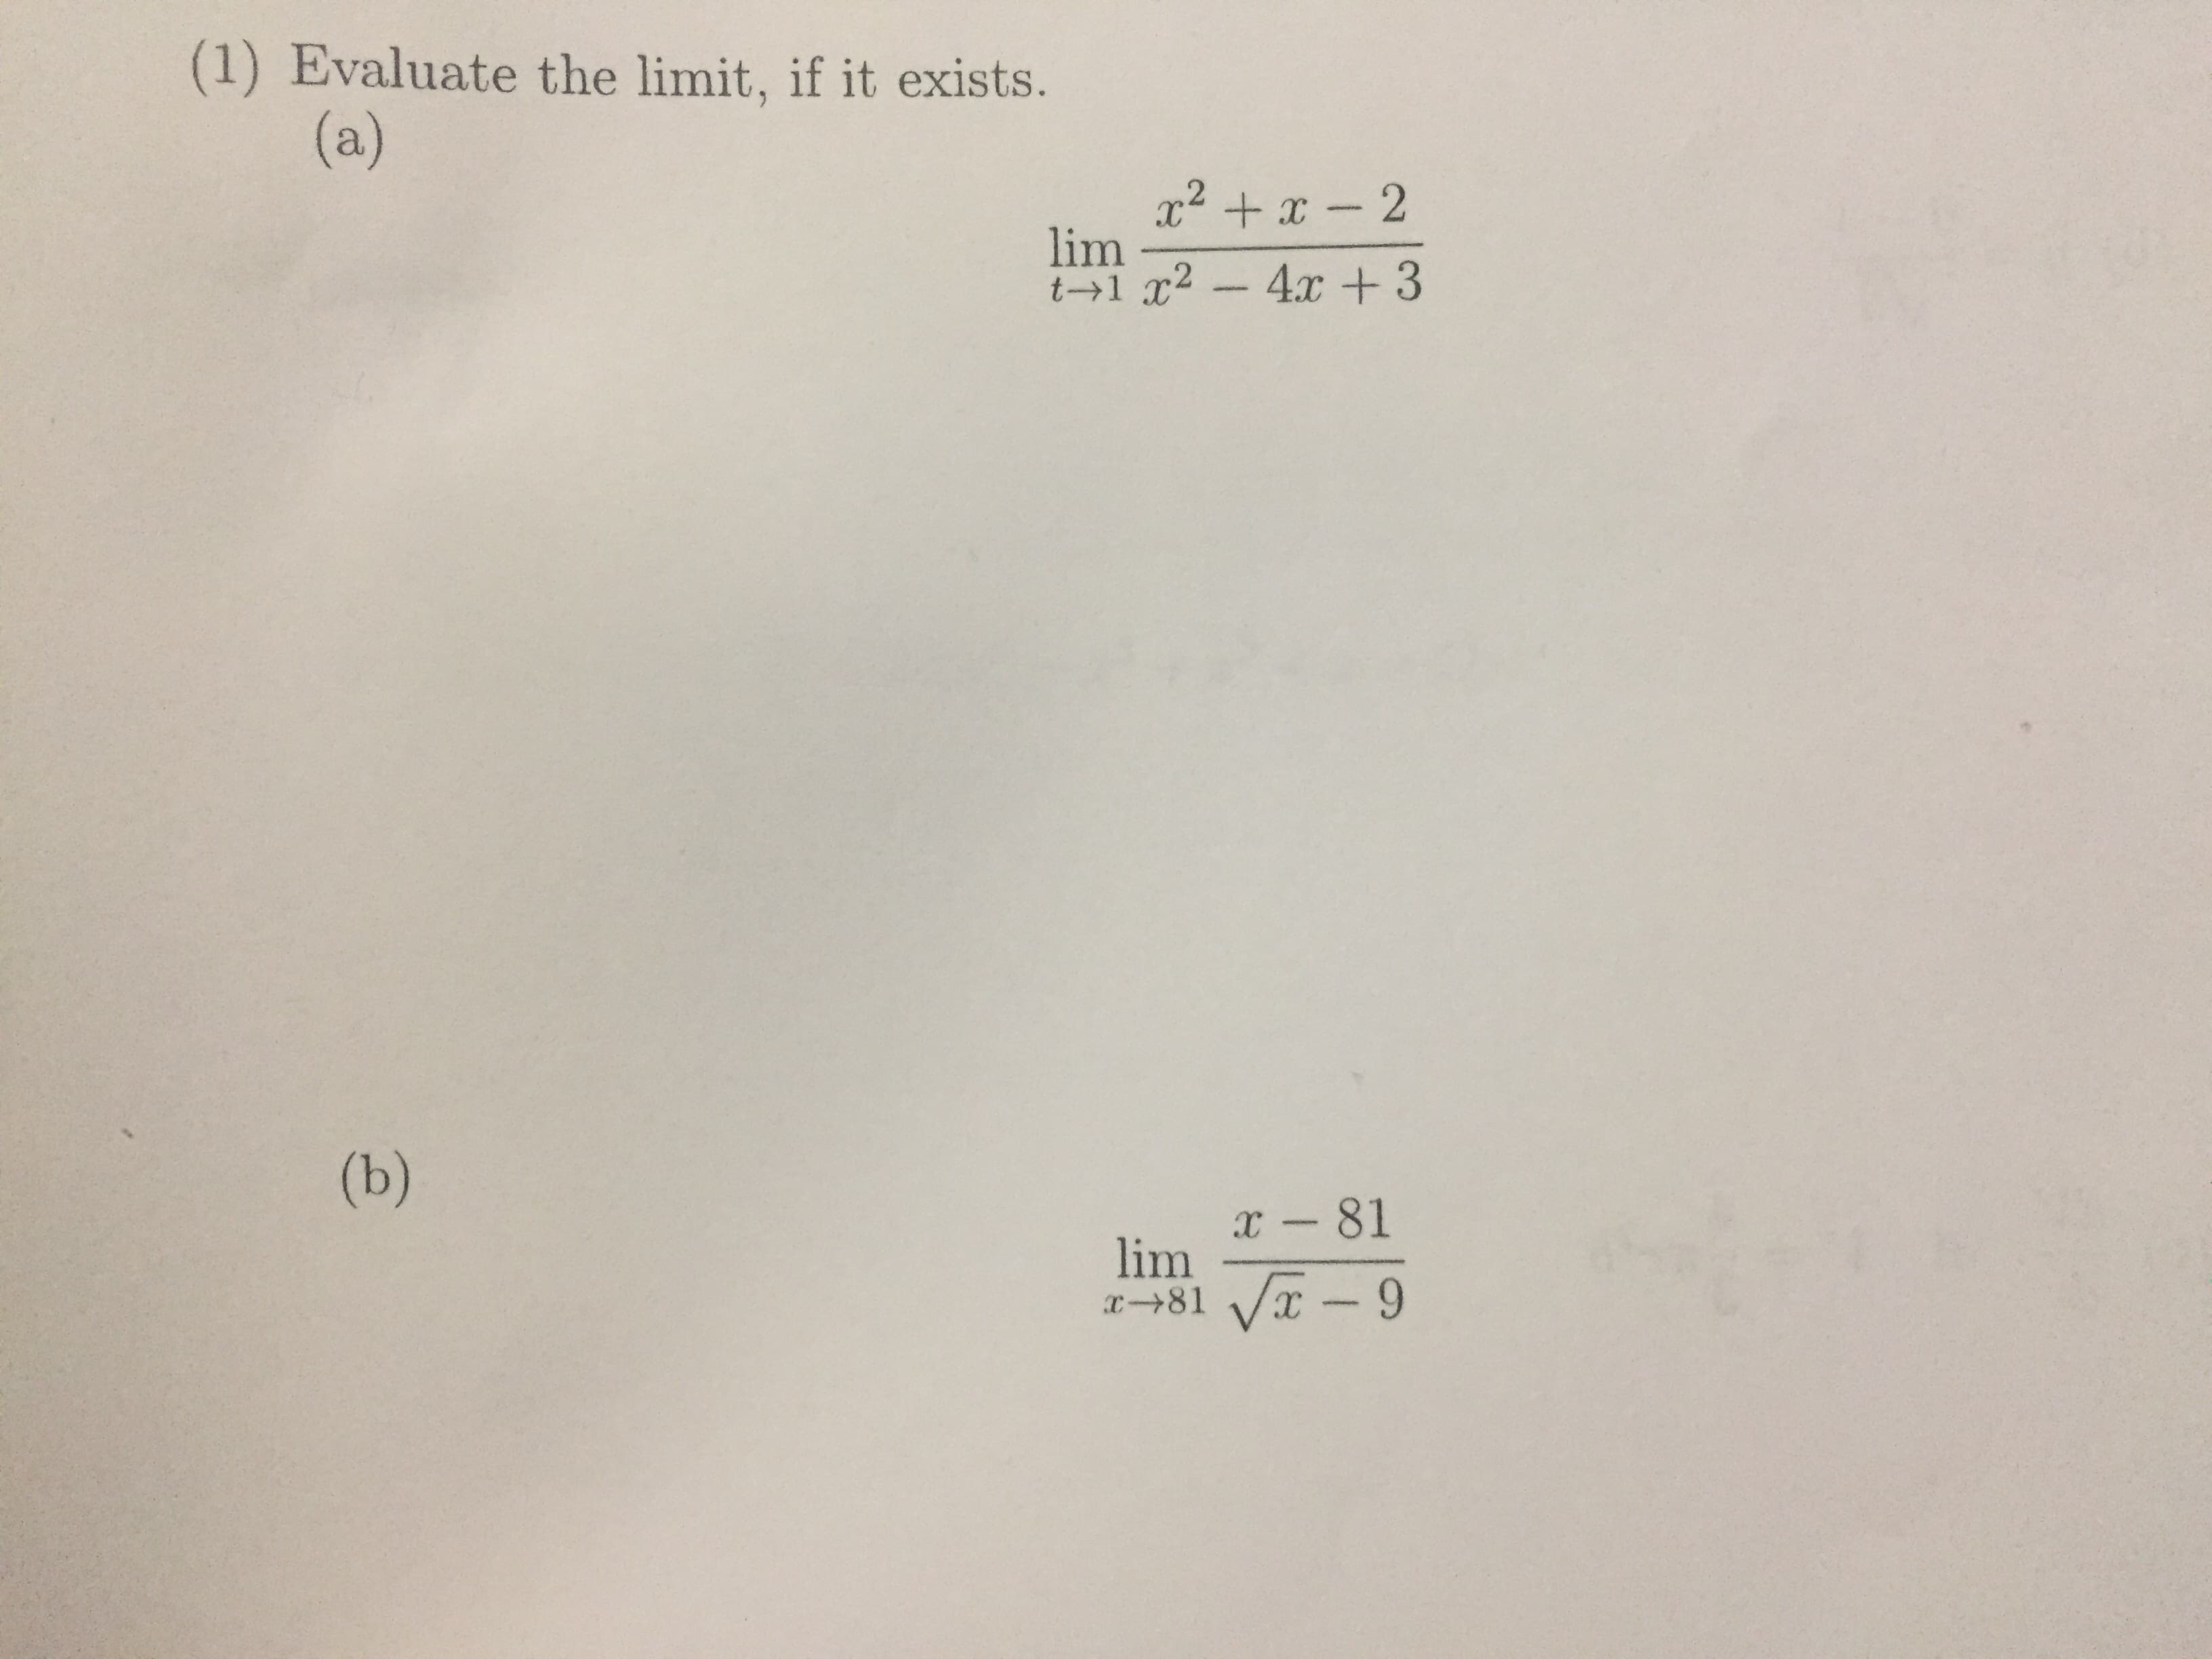 (1) Evaluate the limit, if it exists.
(a)
x² + x - 2
lim
t→1 x² -
4.x + 3
(b)
x - 81
lim
x→81 Vx - 9
